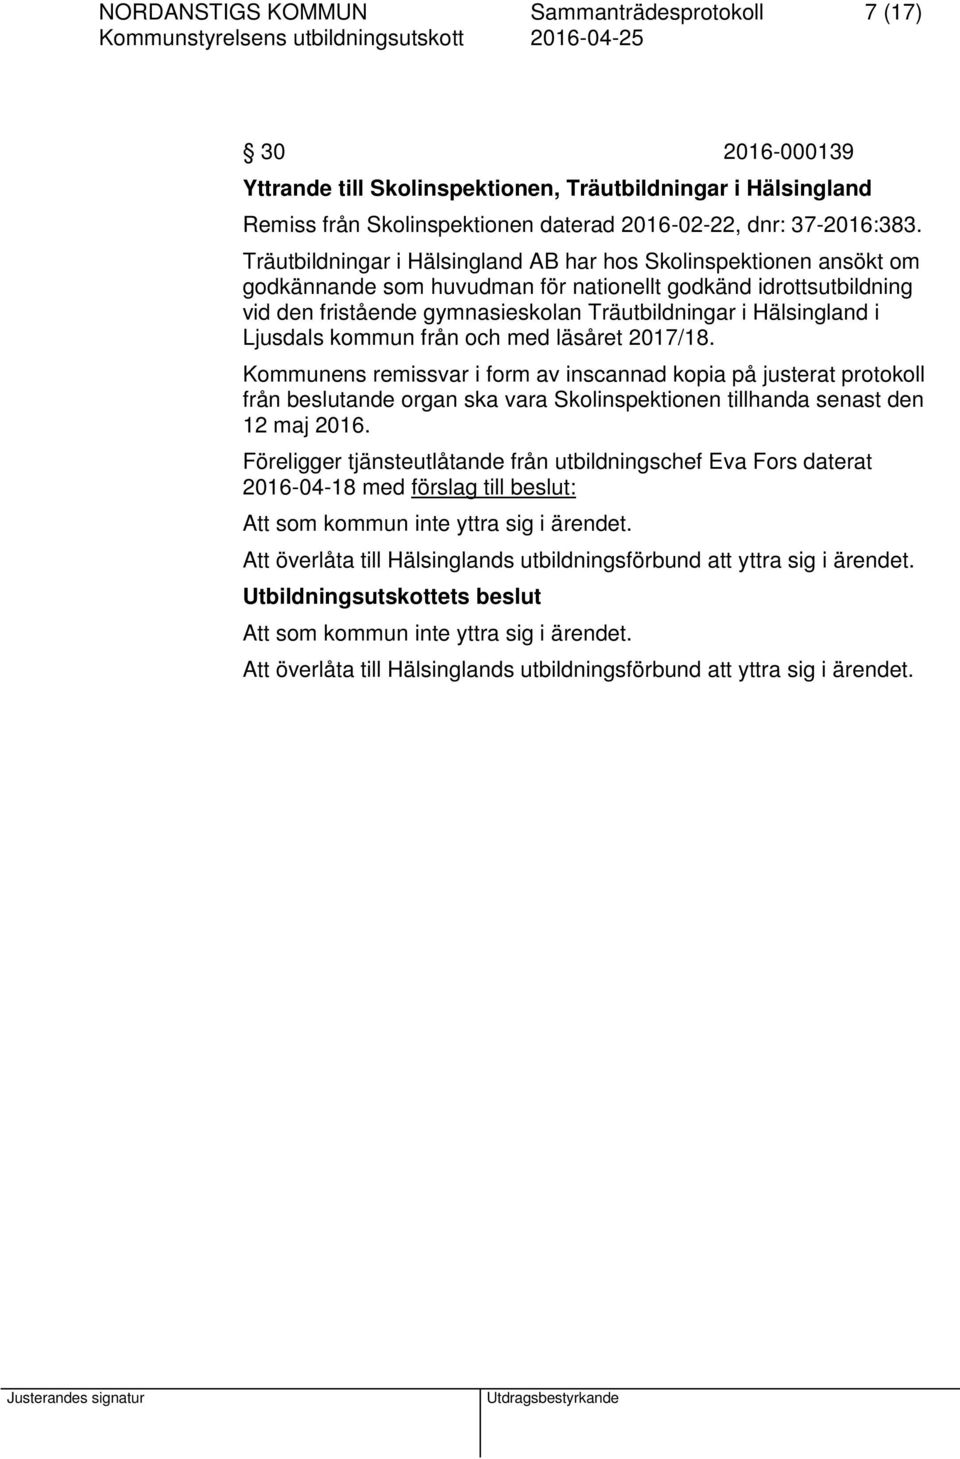 Ljusdals kommun från och med läsåret 2017/18. Kommunens remissvar i form av inscannad kopia på justerat protokoll från beslutande organ ska vara Skolinspektionen tillhanda senast den 12 maj 2016.